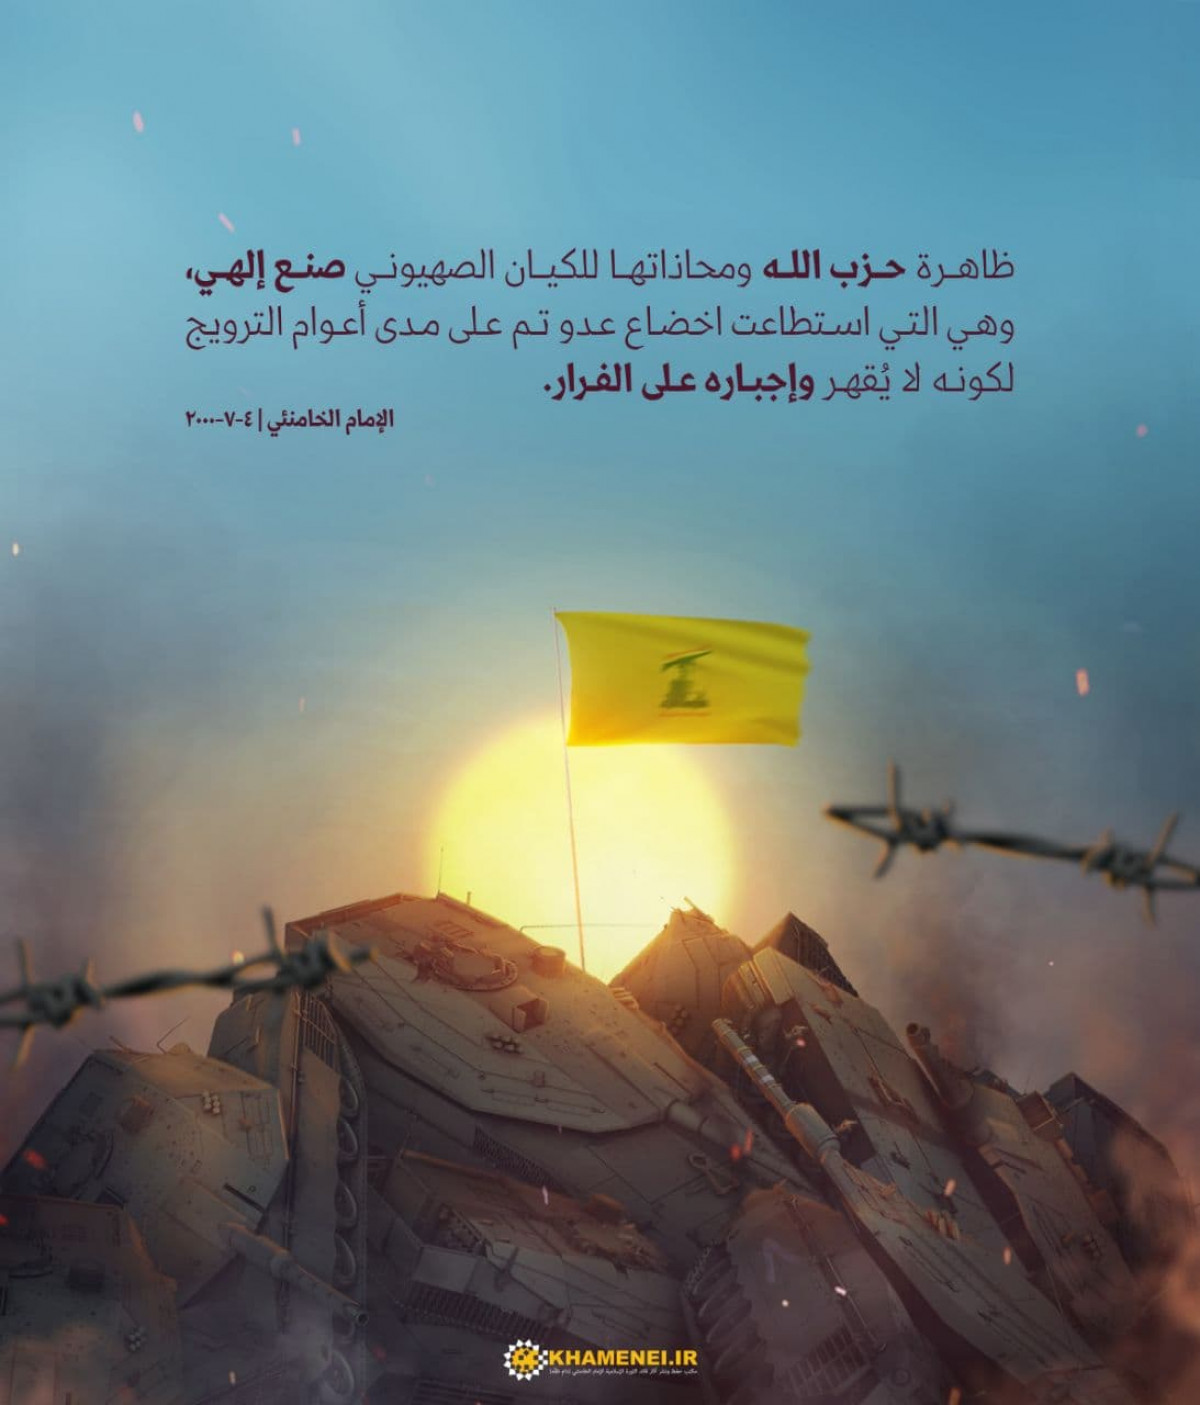 ظاهرة حزب الله ومحاذاتها للكيان الصهيوني صنعٌ إلهي